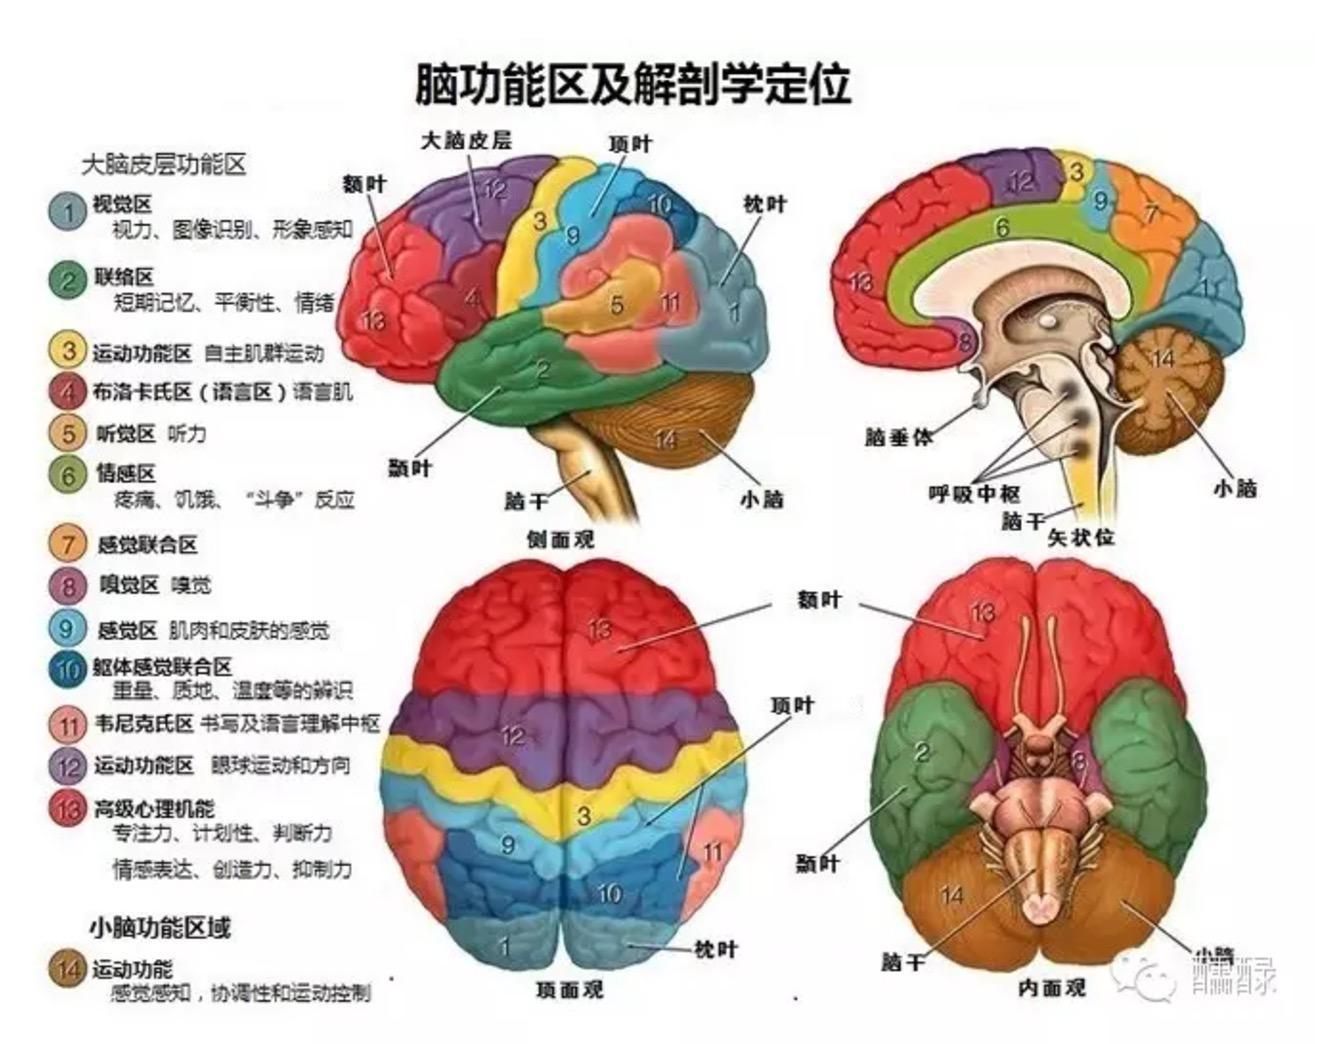 这张图讲述了人的大脑分区和每一个分区所掌管的功能